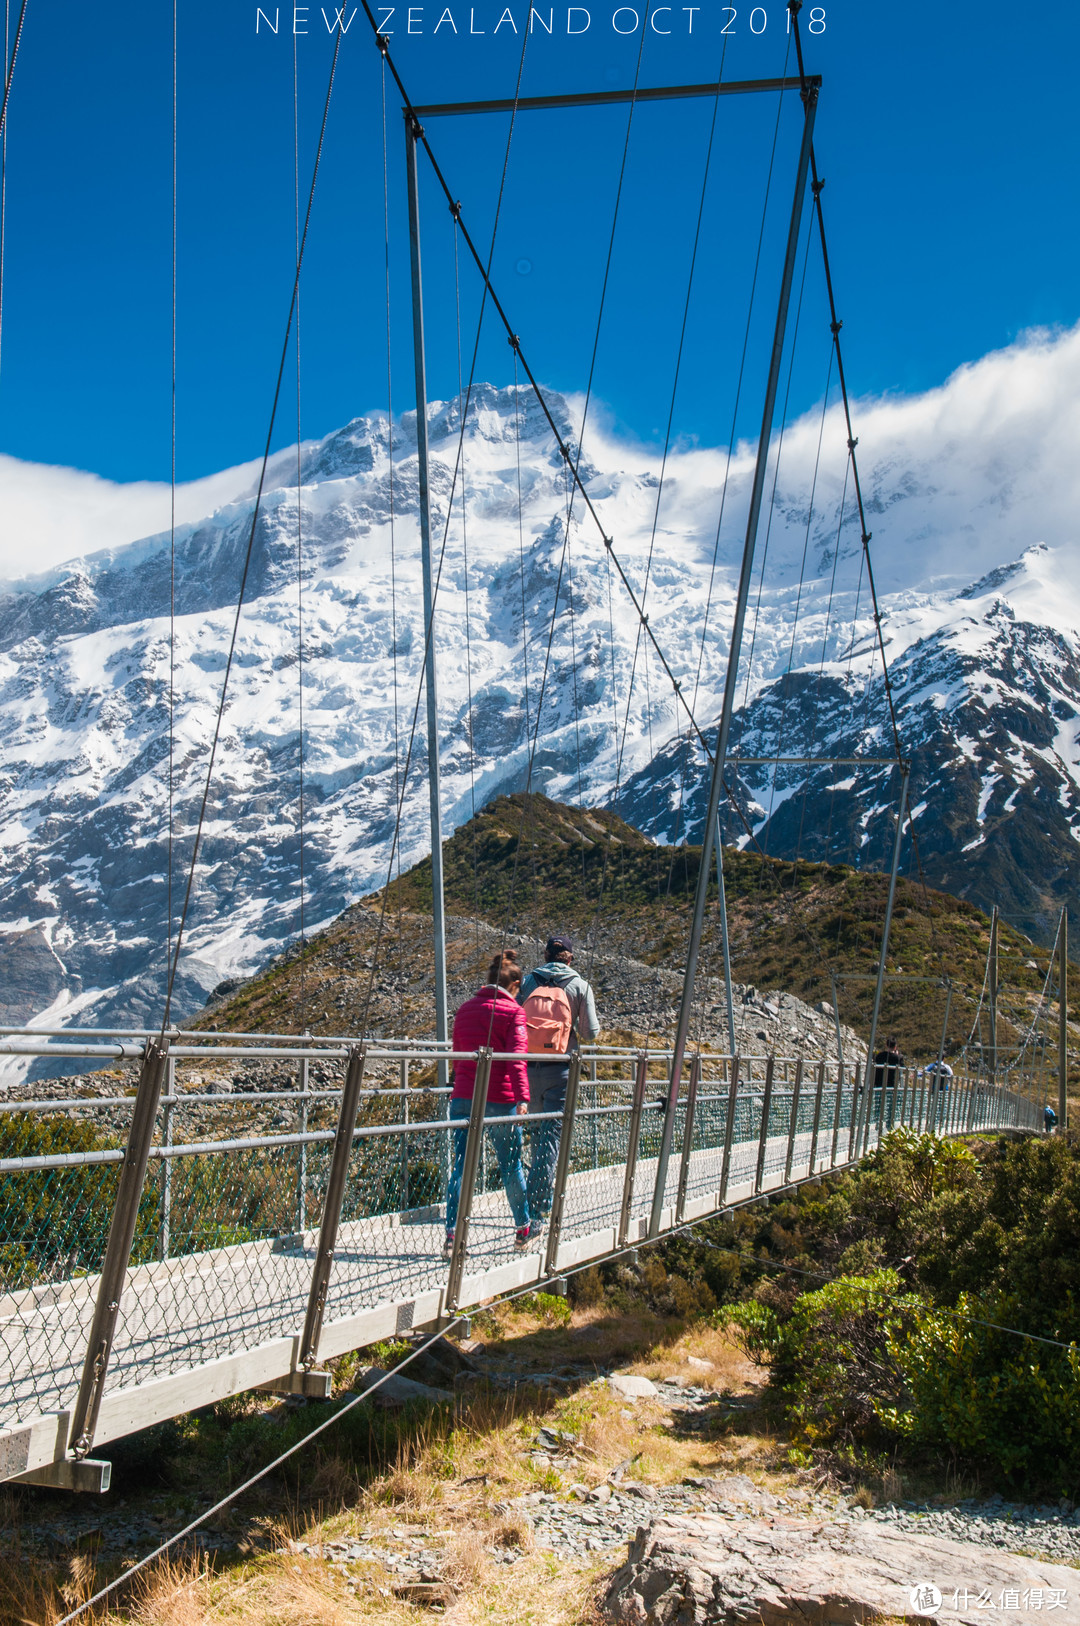 南阿尔卑斯山的风雨阳光——新西兰南岛蜜月之旅